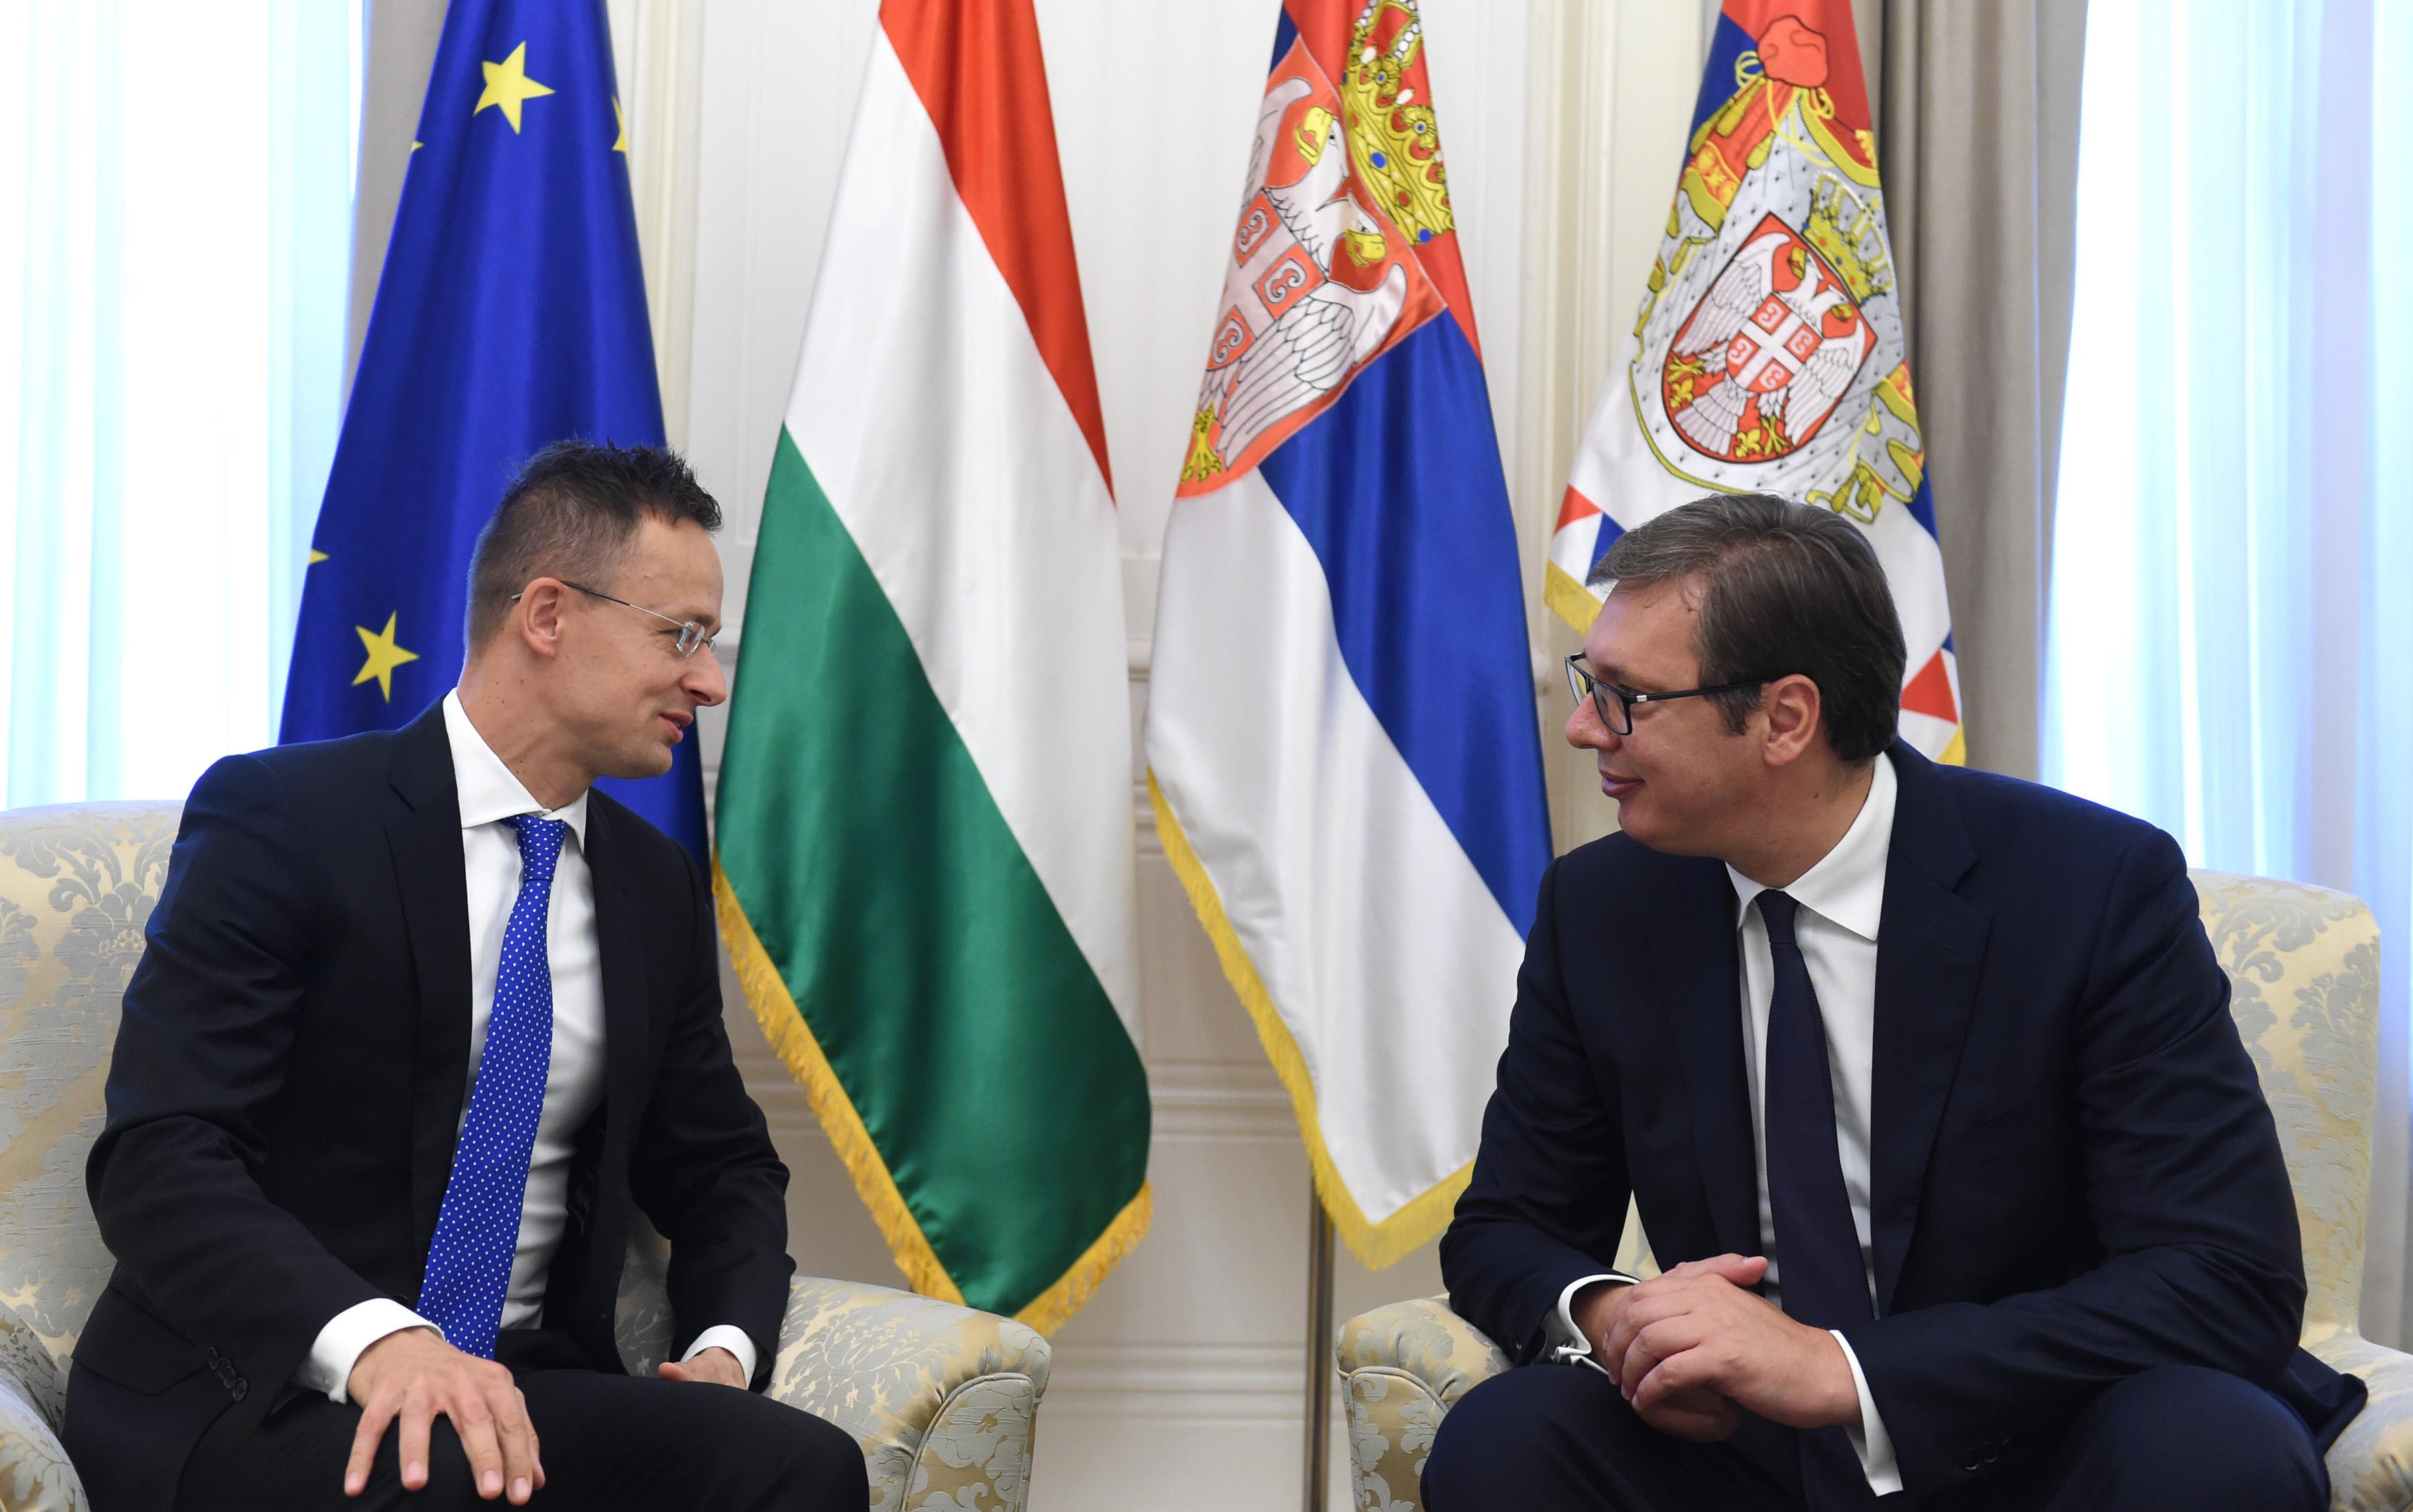 (FOTO) VUČIĆ RAZGOVARAO SA SIJARTOM:Odnosi Madjarske i Srbije na najvišem istorijskom nivou!  